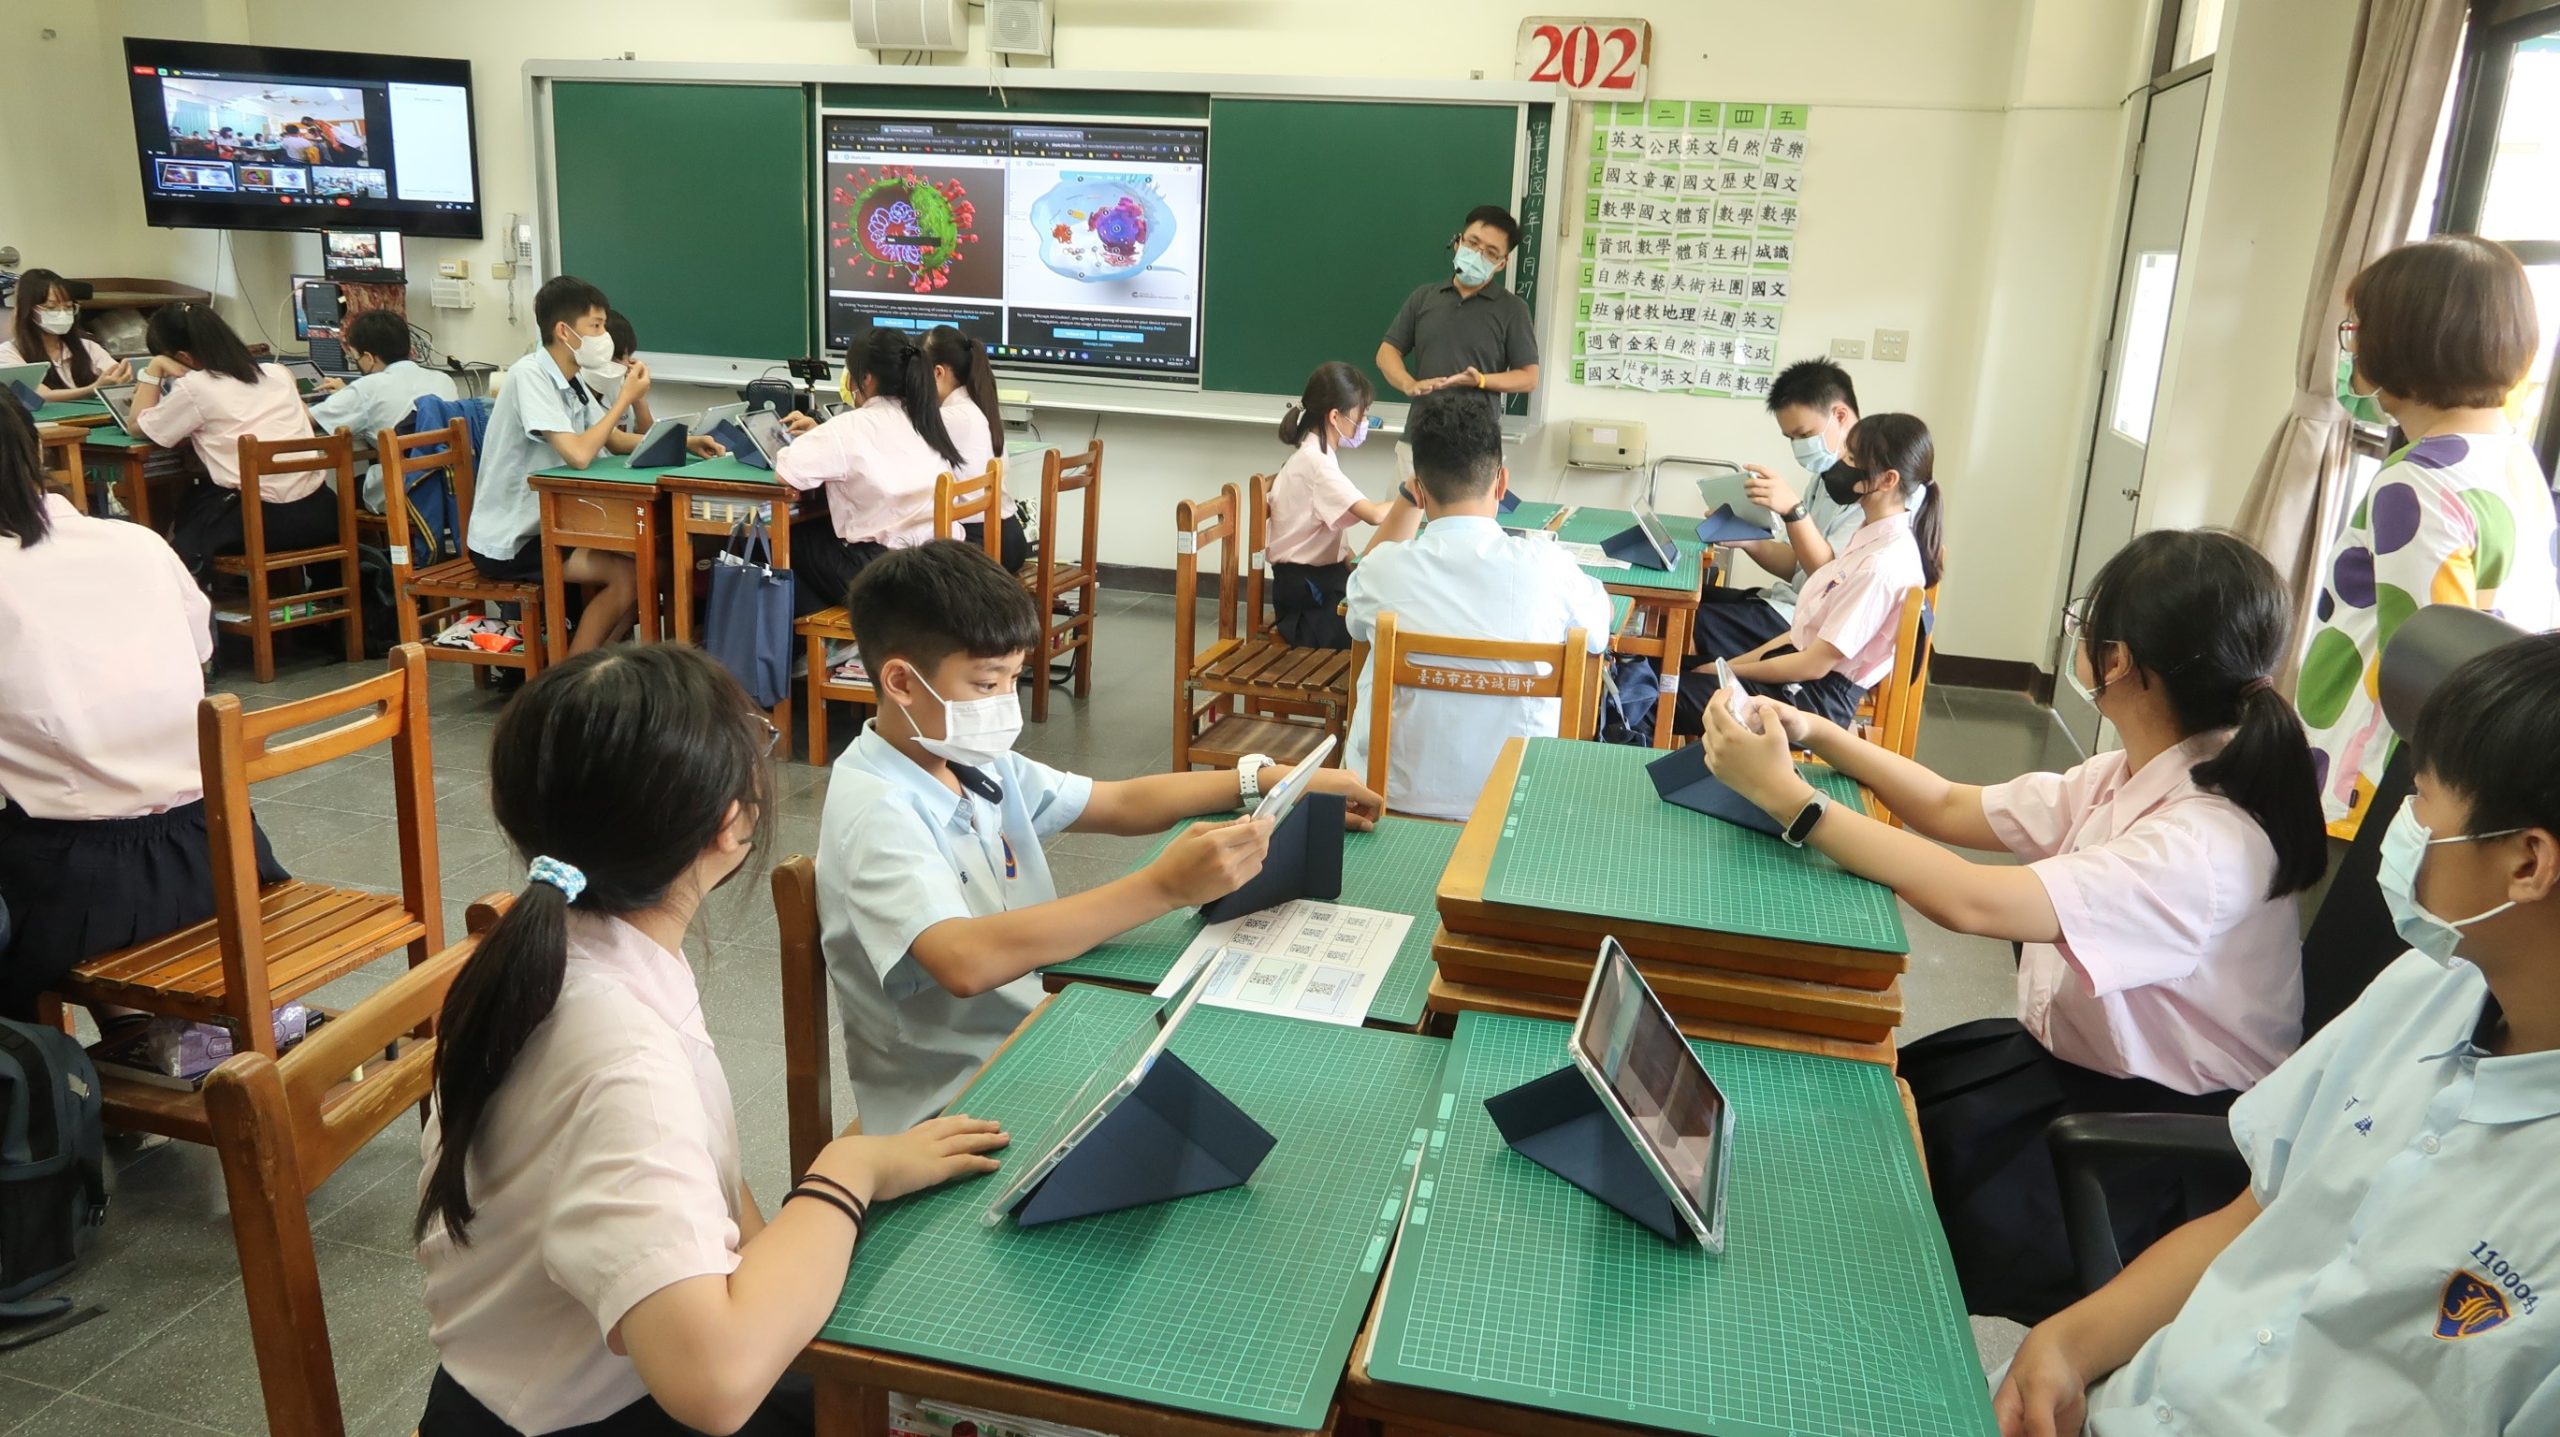 臺南18所重點學校研發數位主題課程 生生用平板計畫正式啟動